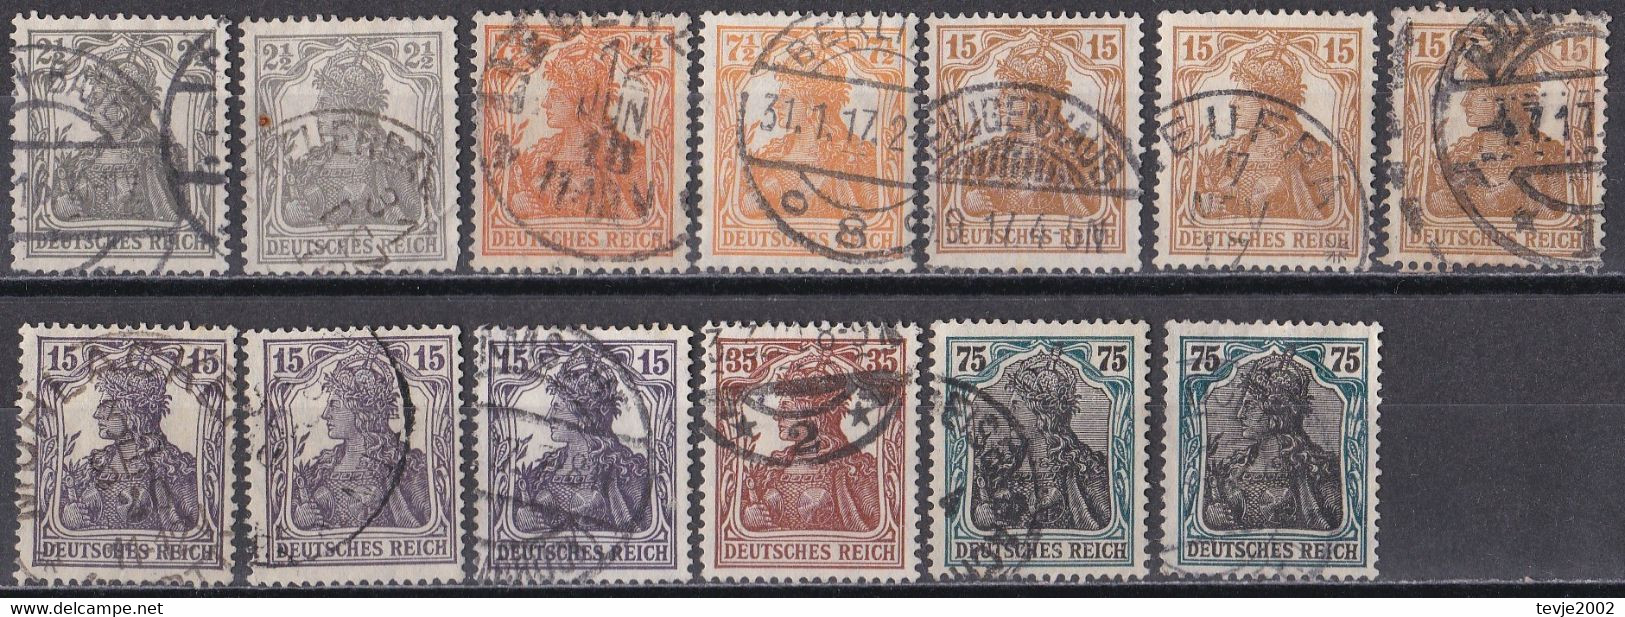 Deutsches Reich 1916 - 1919 - Mi.Nr. 98 - 104 - Gestempelt Used - Teils Mehrfach - Germania - Used Stamps